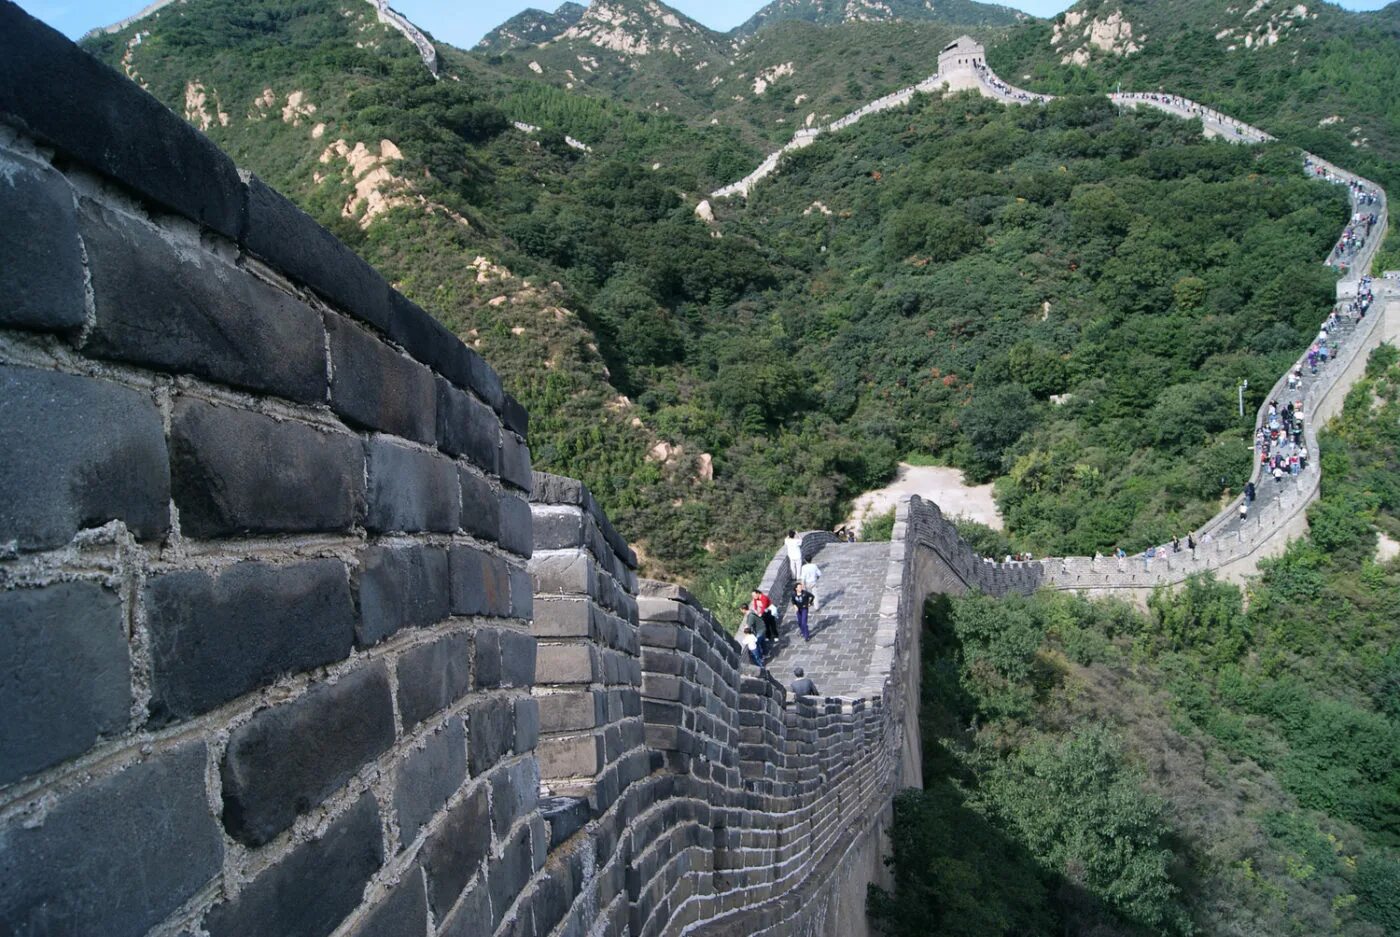 Великая китайская стена. 4—3 ВВ. До н. э.. Династия Цинь китайская стена. Великая китайская стена Цинь Шихуанди. Великая китайская стена в эпоху Цинь.